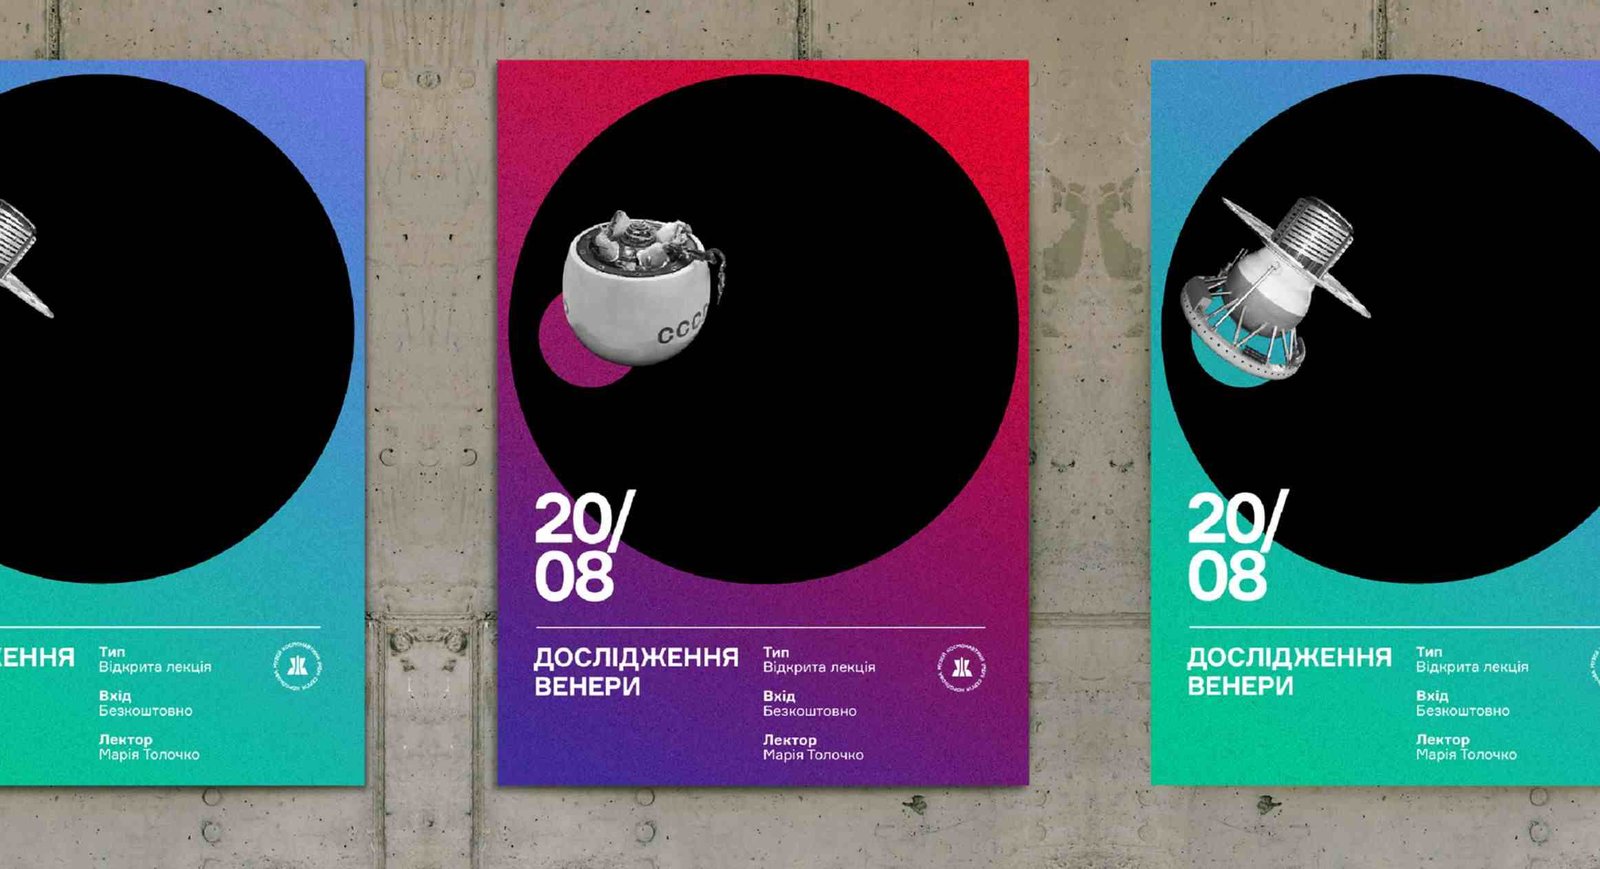 Poster Design Museum Planetarium Exhibition